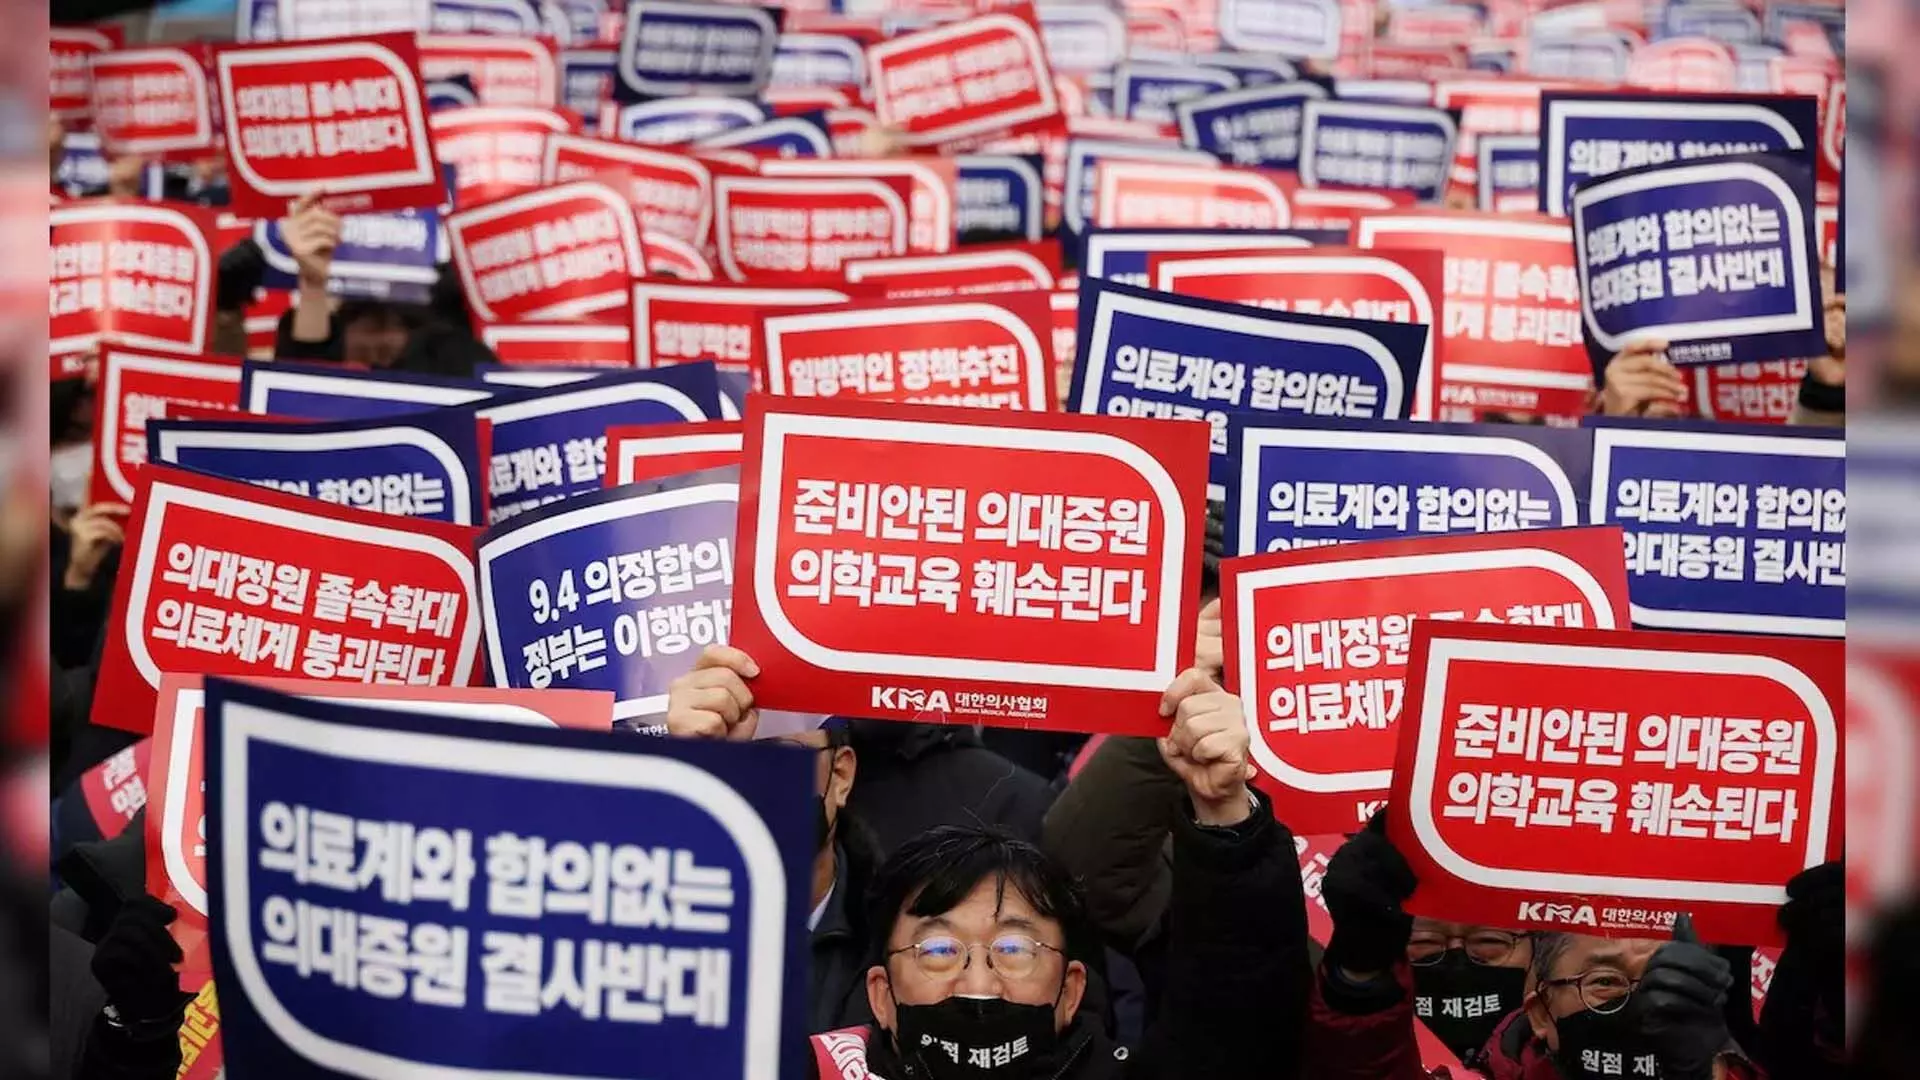 दक्षिण कोरिया वॉकआउट करने वाले डॉक्टरों के खिलाफ कानूनी कार्रवाई करेगा